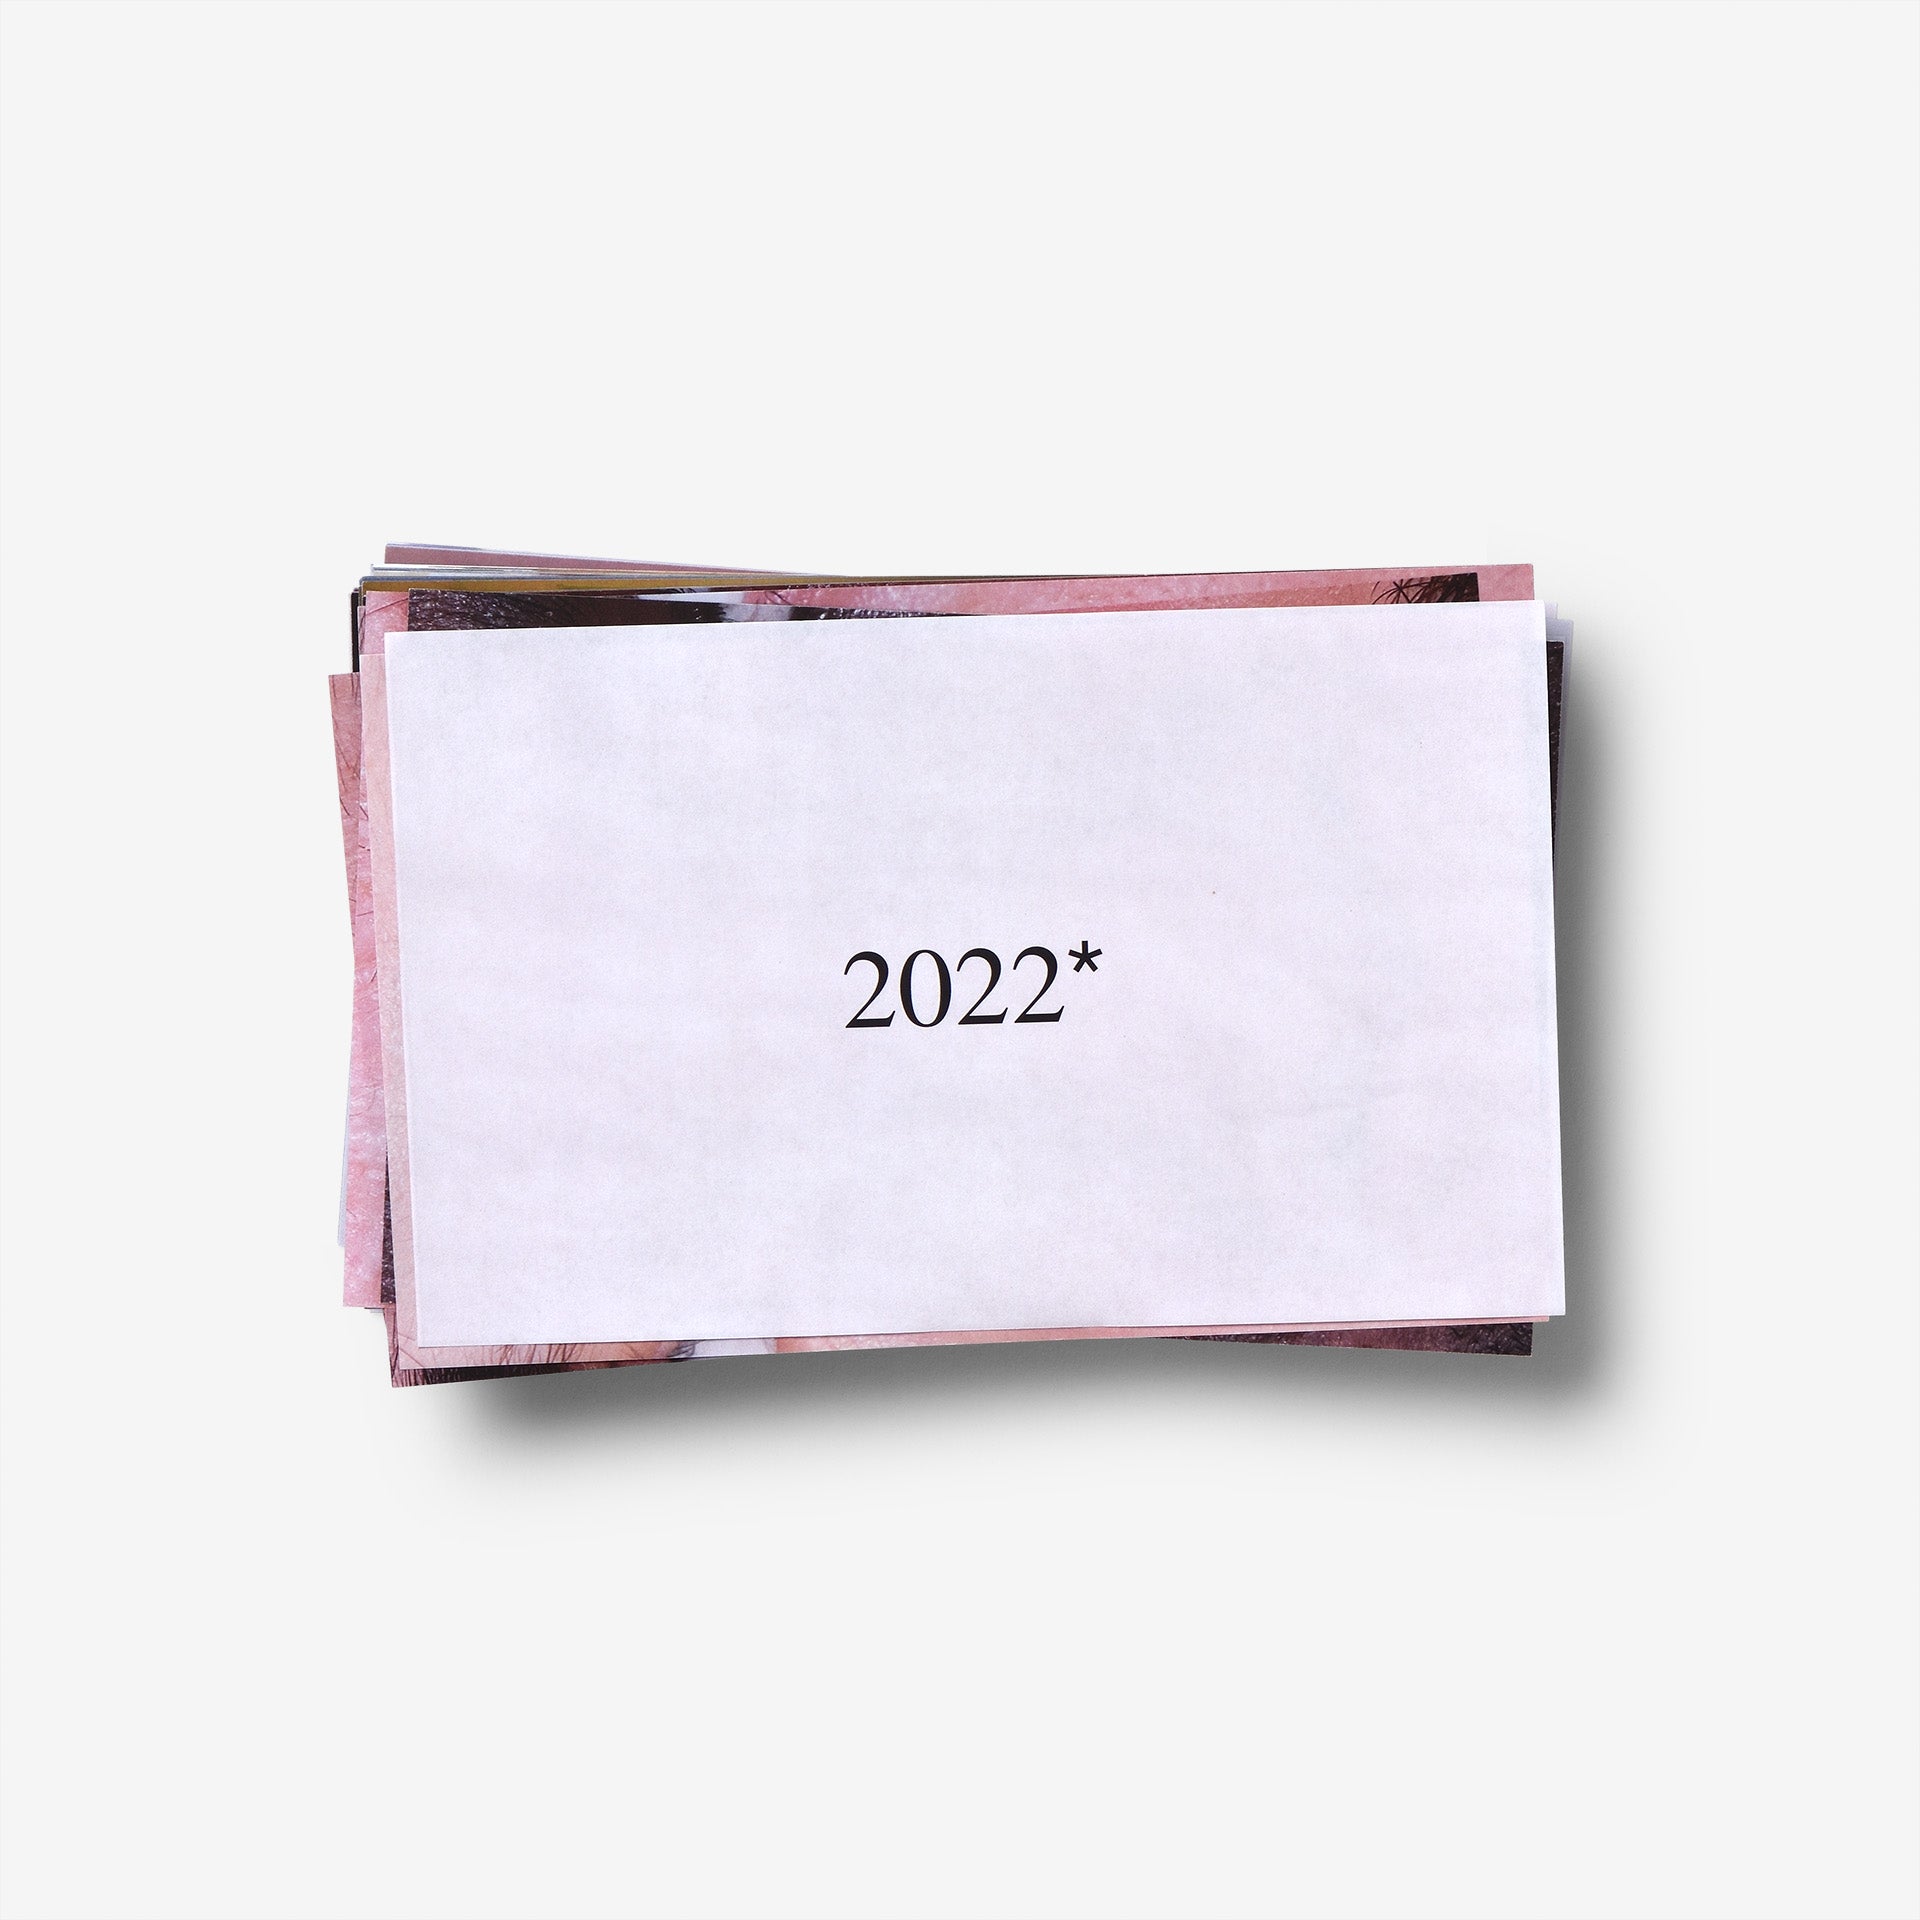 2022* Magazine - Santiago González Cover